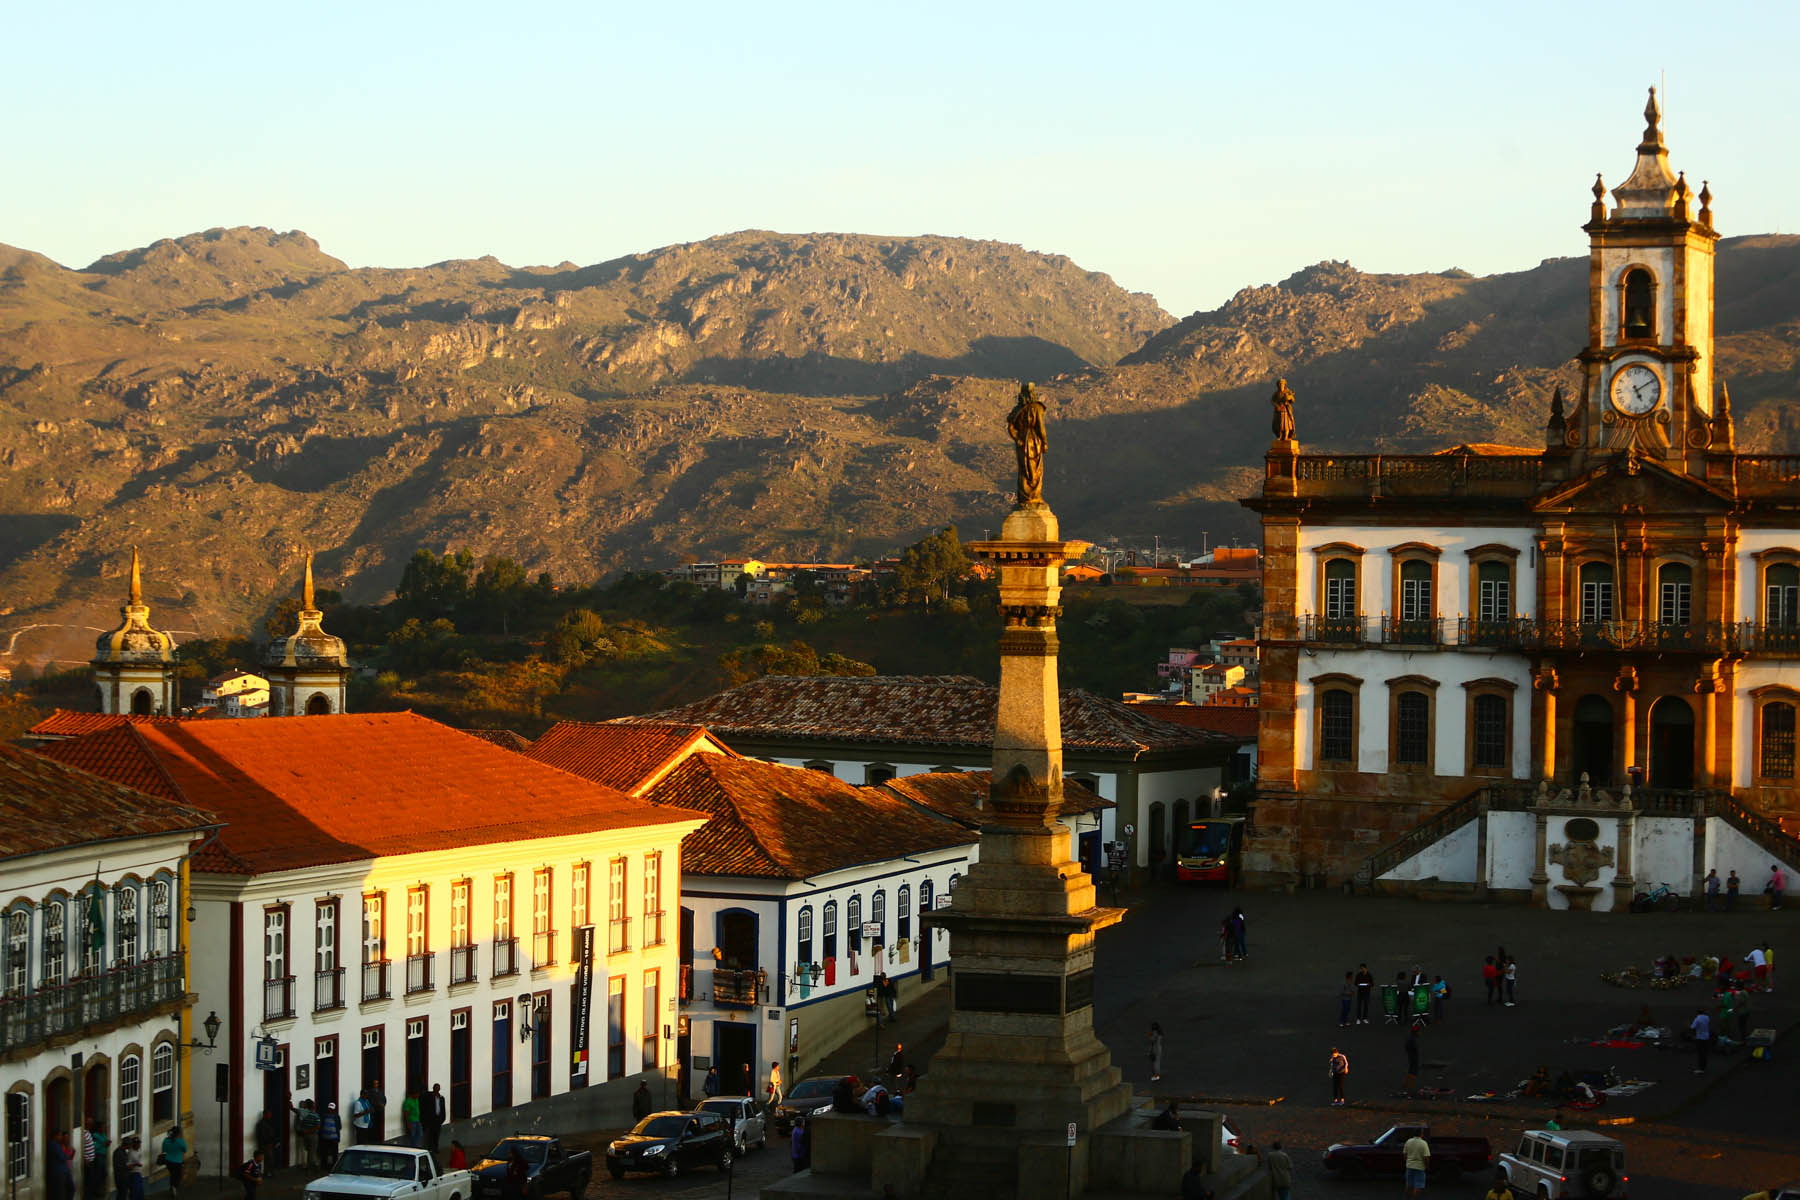 Ouro Preto - MG